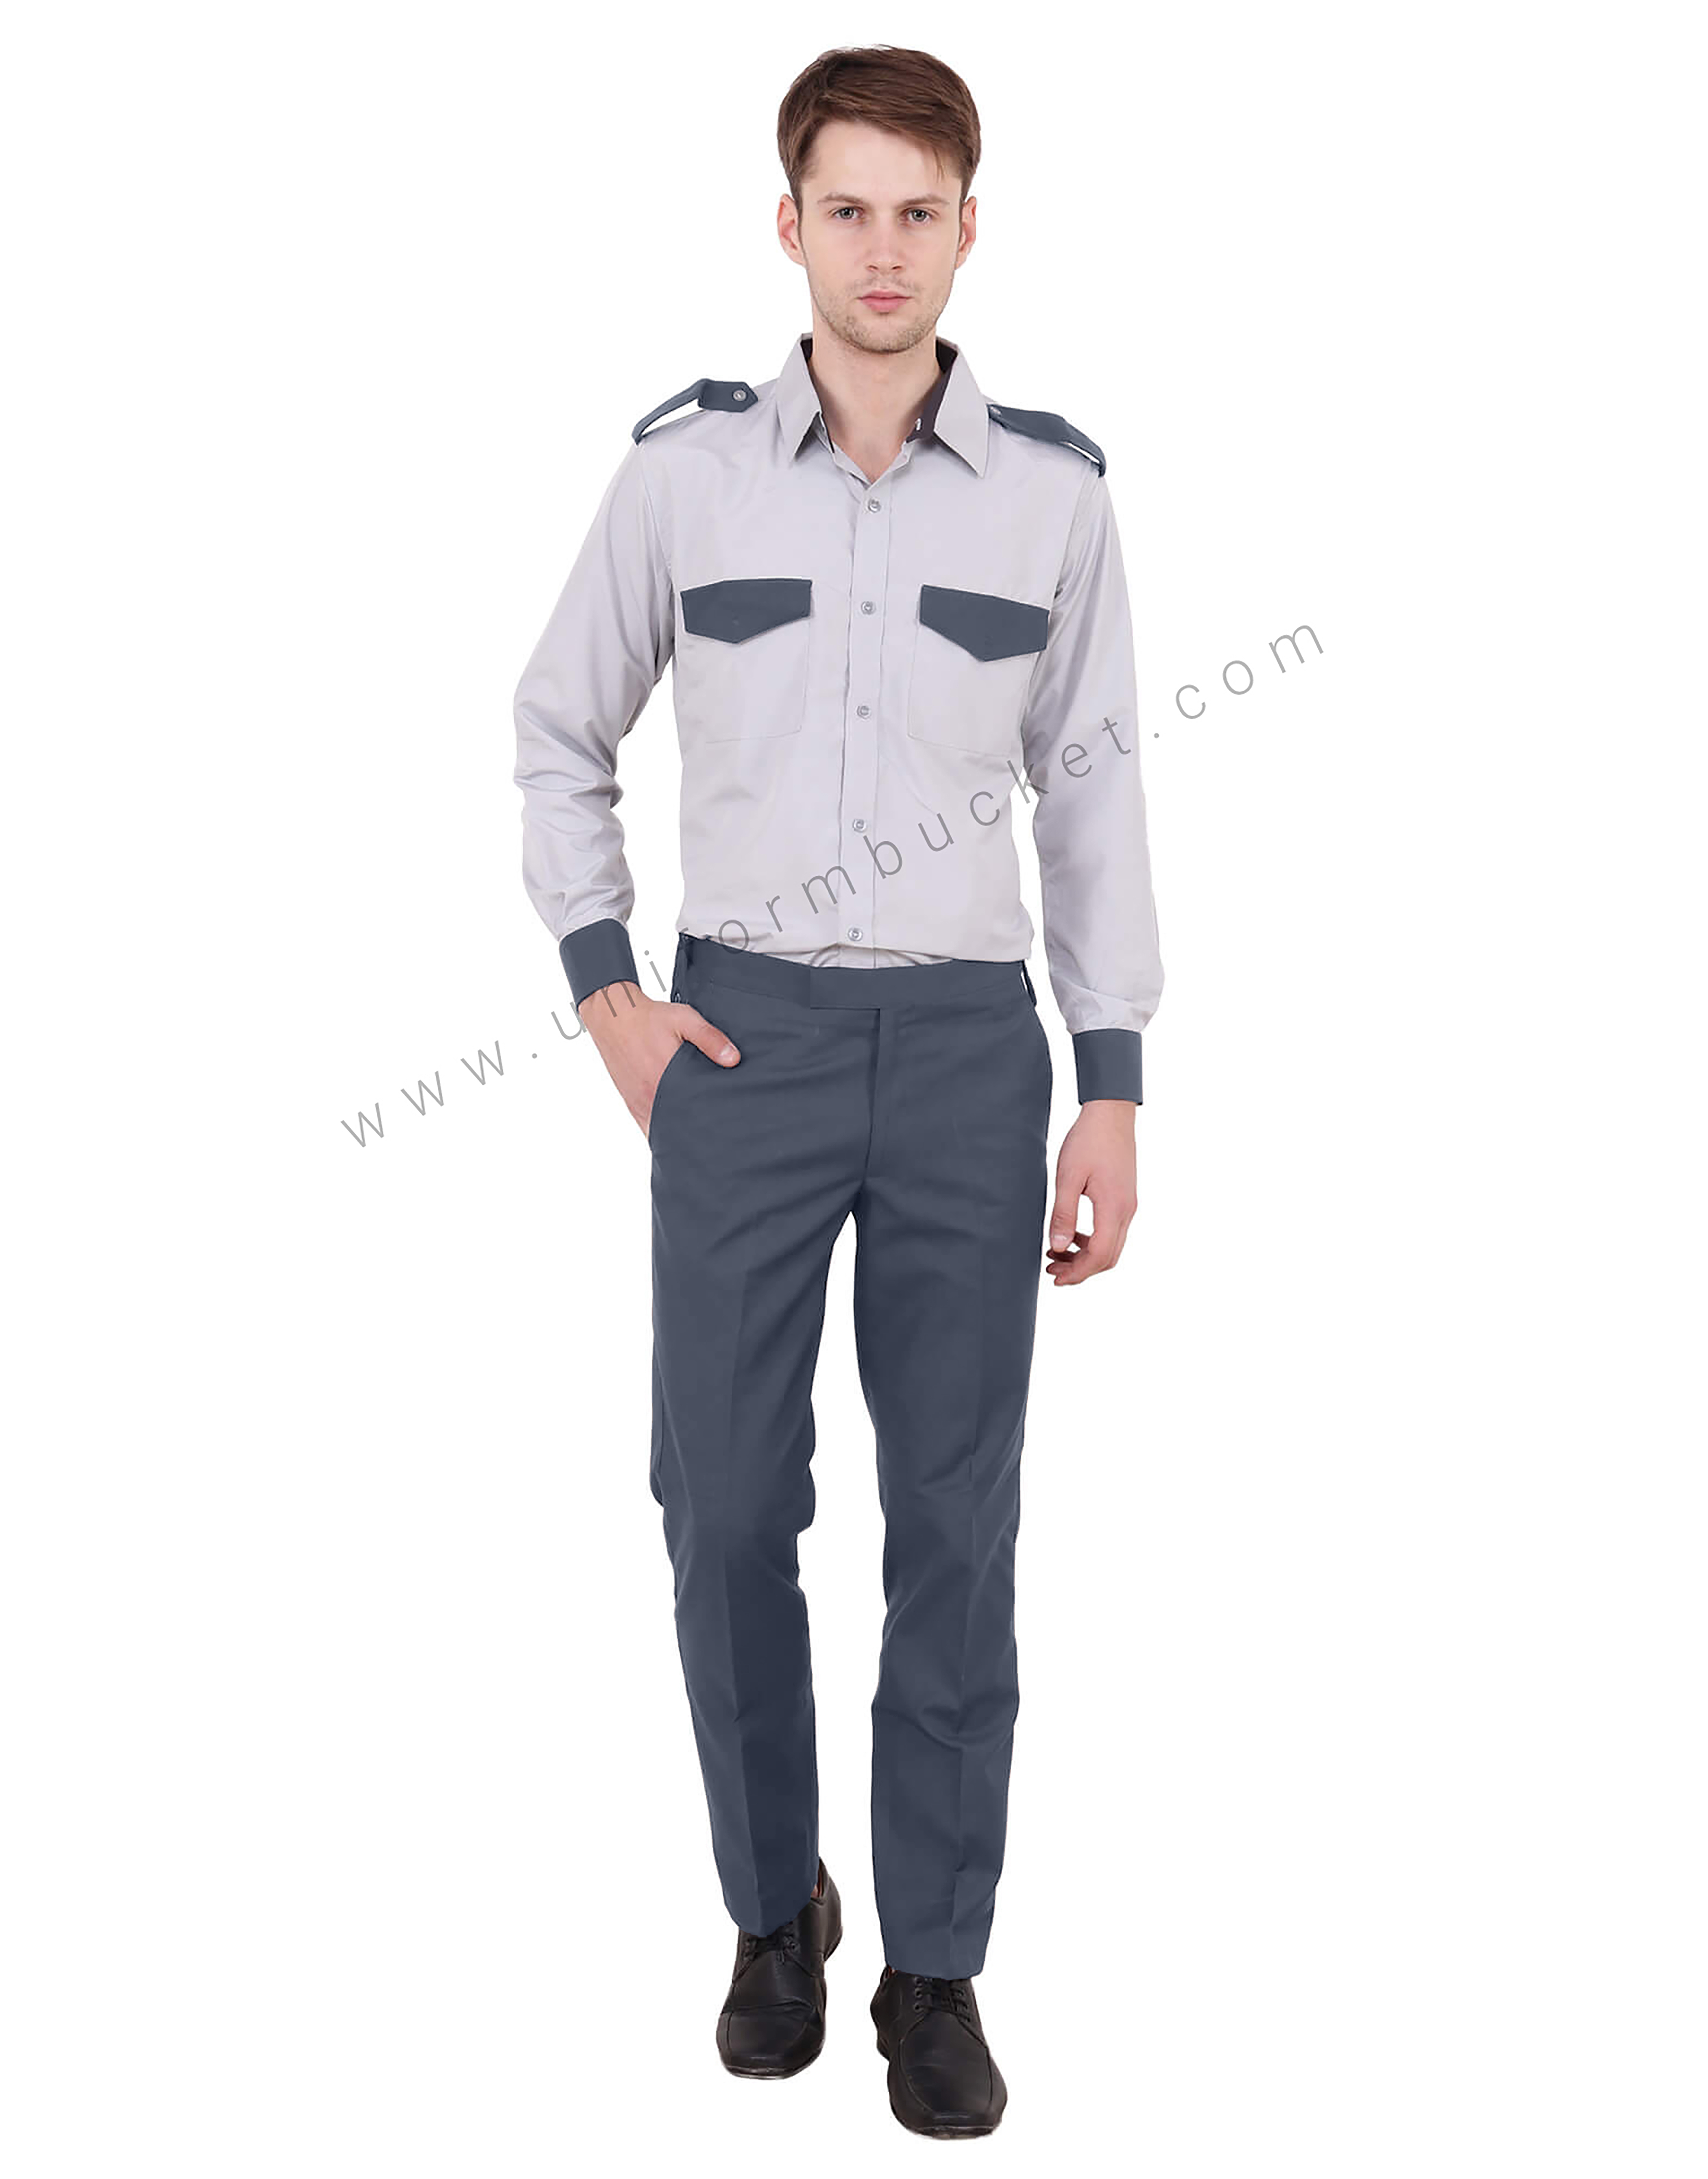 Grey Security Guard Shirt For Men